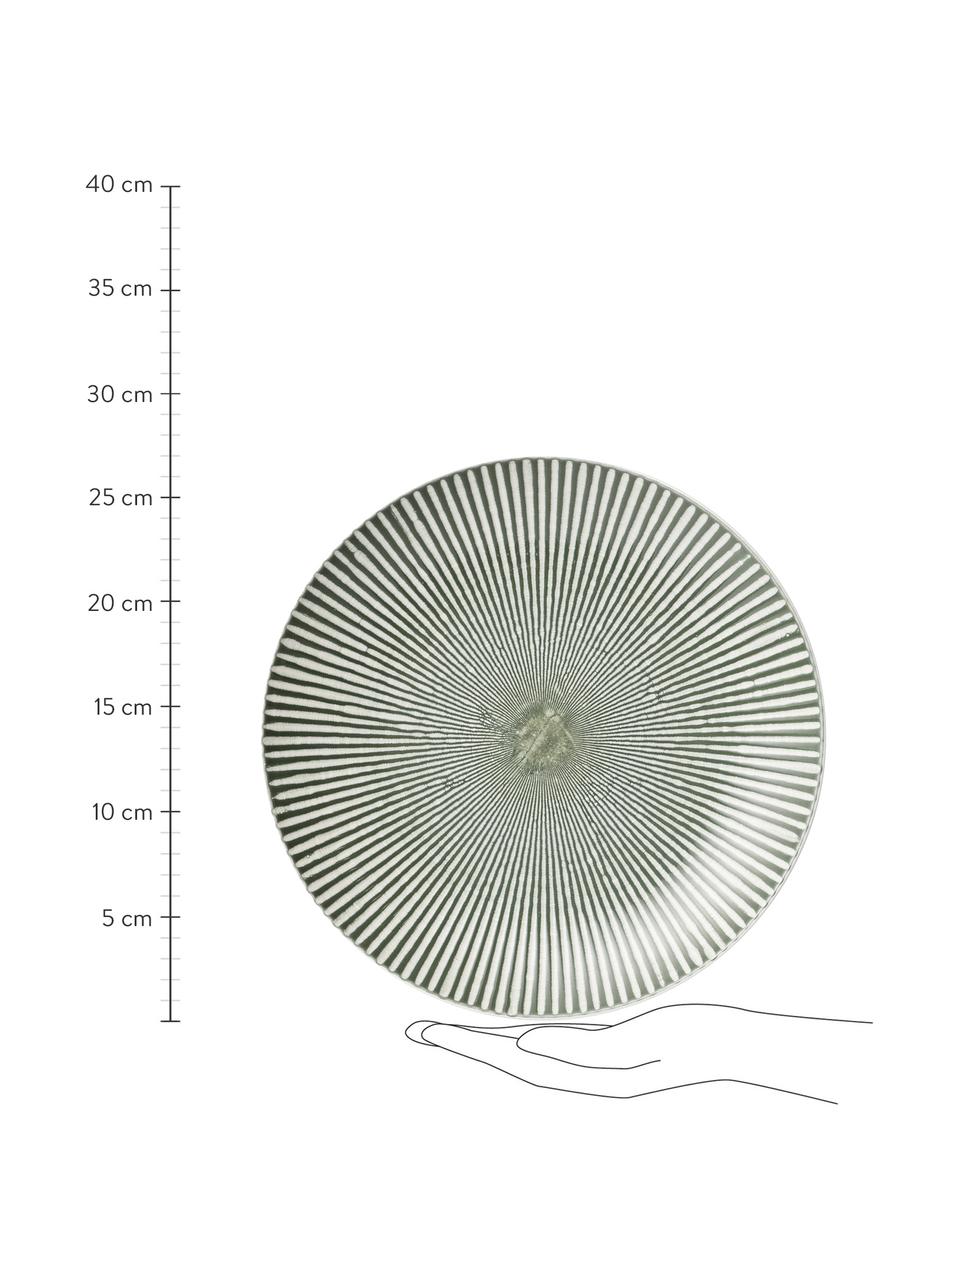 Speiseteller Abella in Grün/Weiß mit Strukturmuster, 2 Stück, Keramik, Grün, Weiß, Ø 27 x H 3 cm